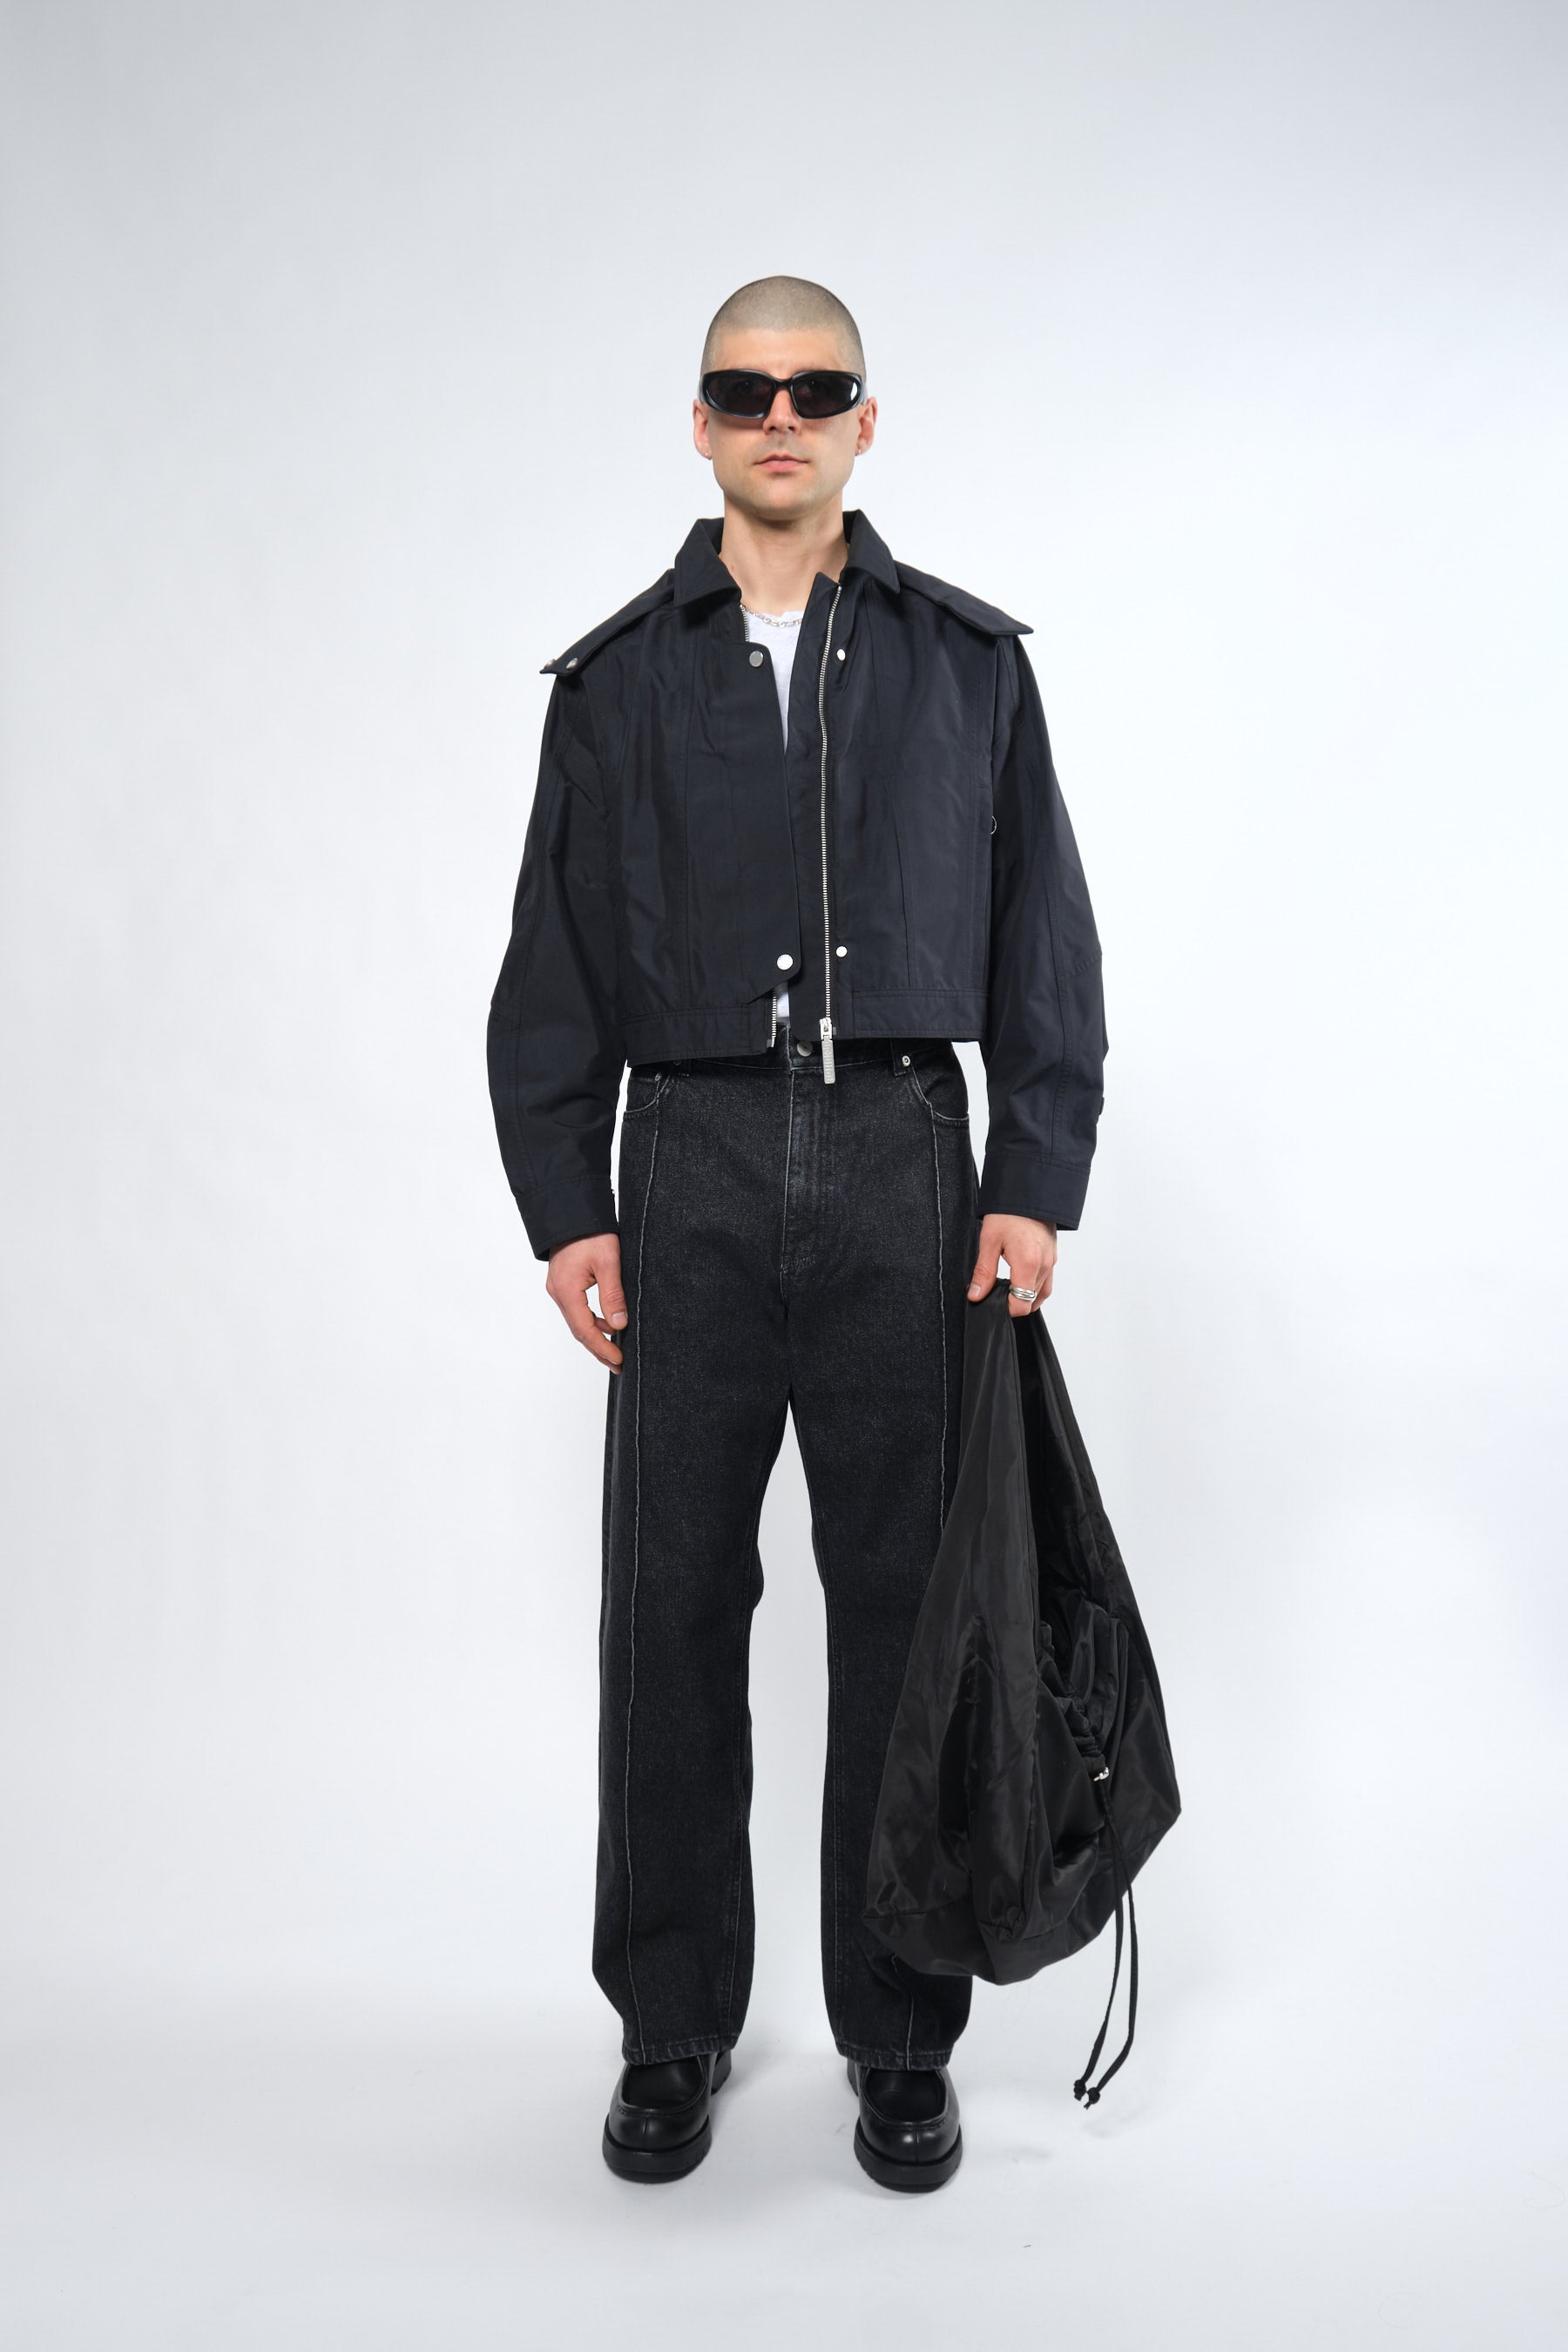  3L Black Waterproof Crop Rain Jacket with Hood - Adhere To  - 1